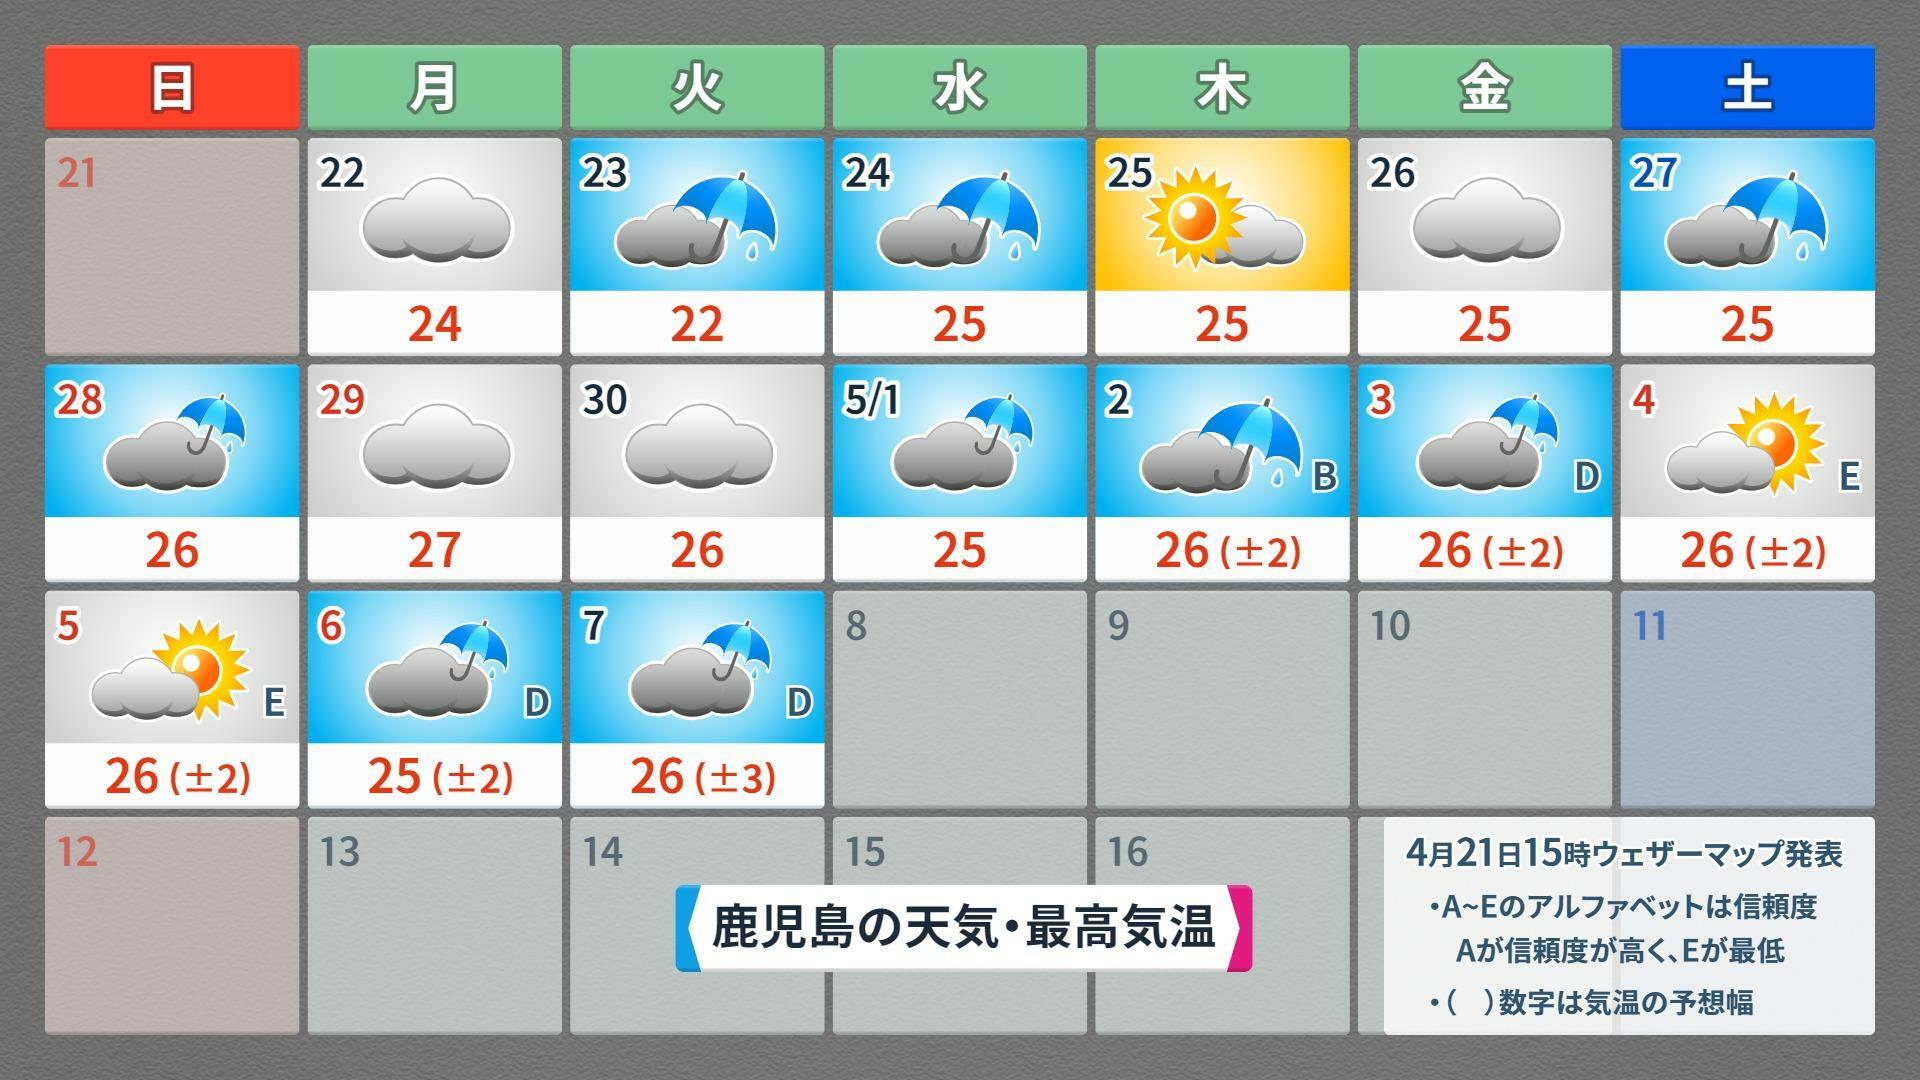 【鹿児島】この先16日間の天気予報（4月21日午後5時現在）、ウェザーマップ作画